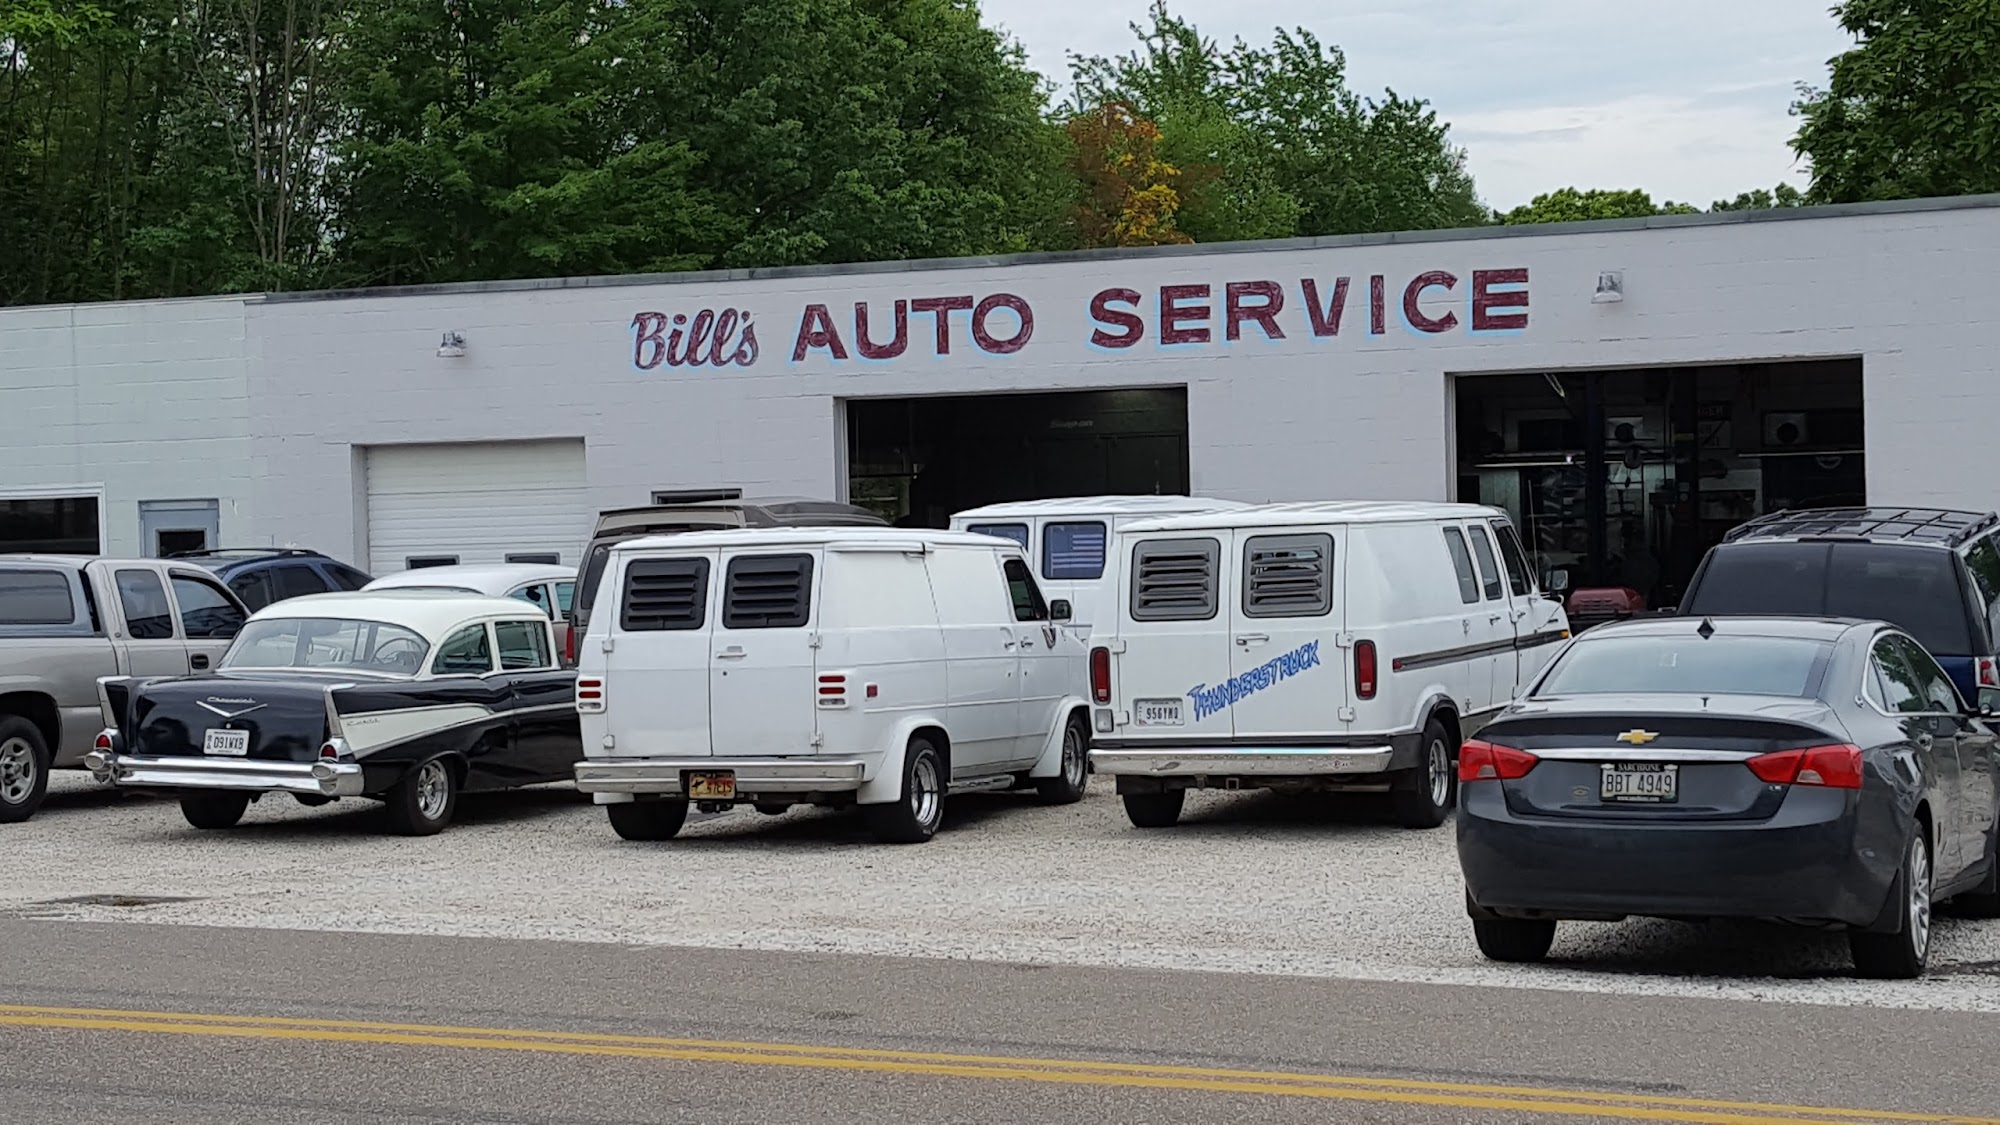 Bill's Auto Services